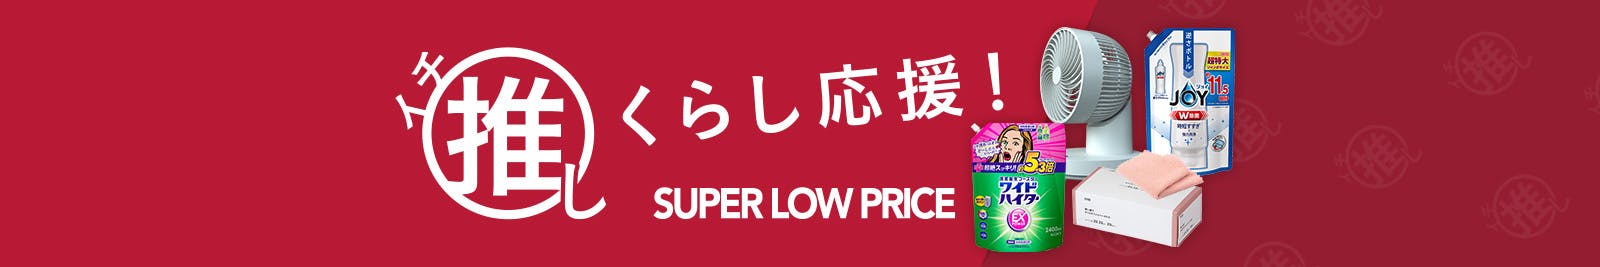 イチ推し SUPER LOW PRICE